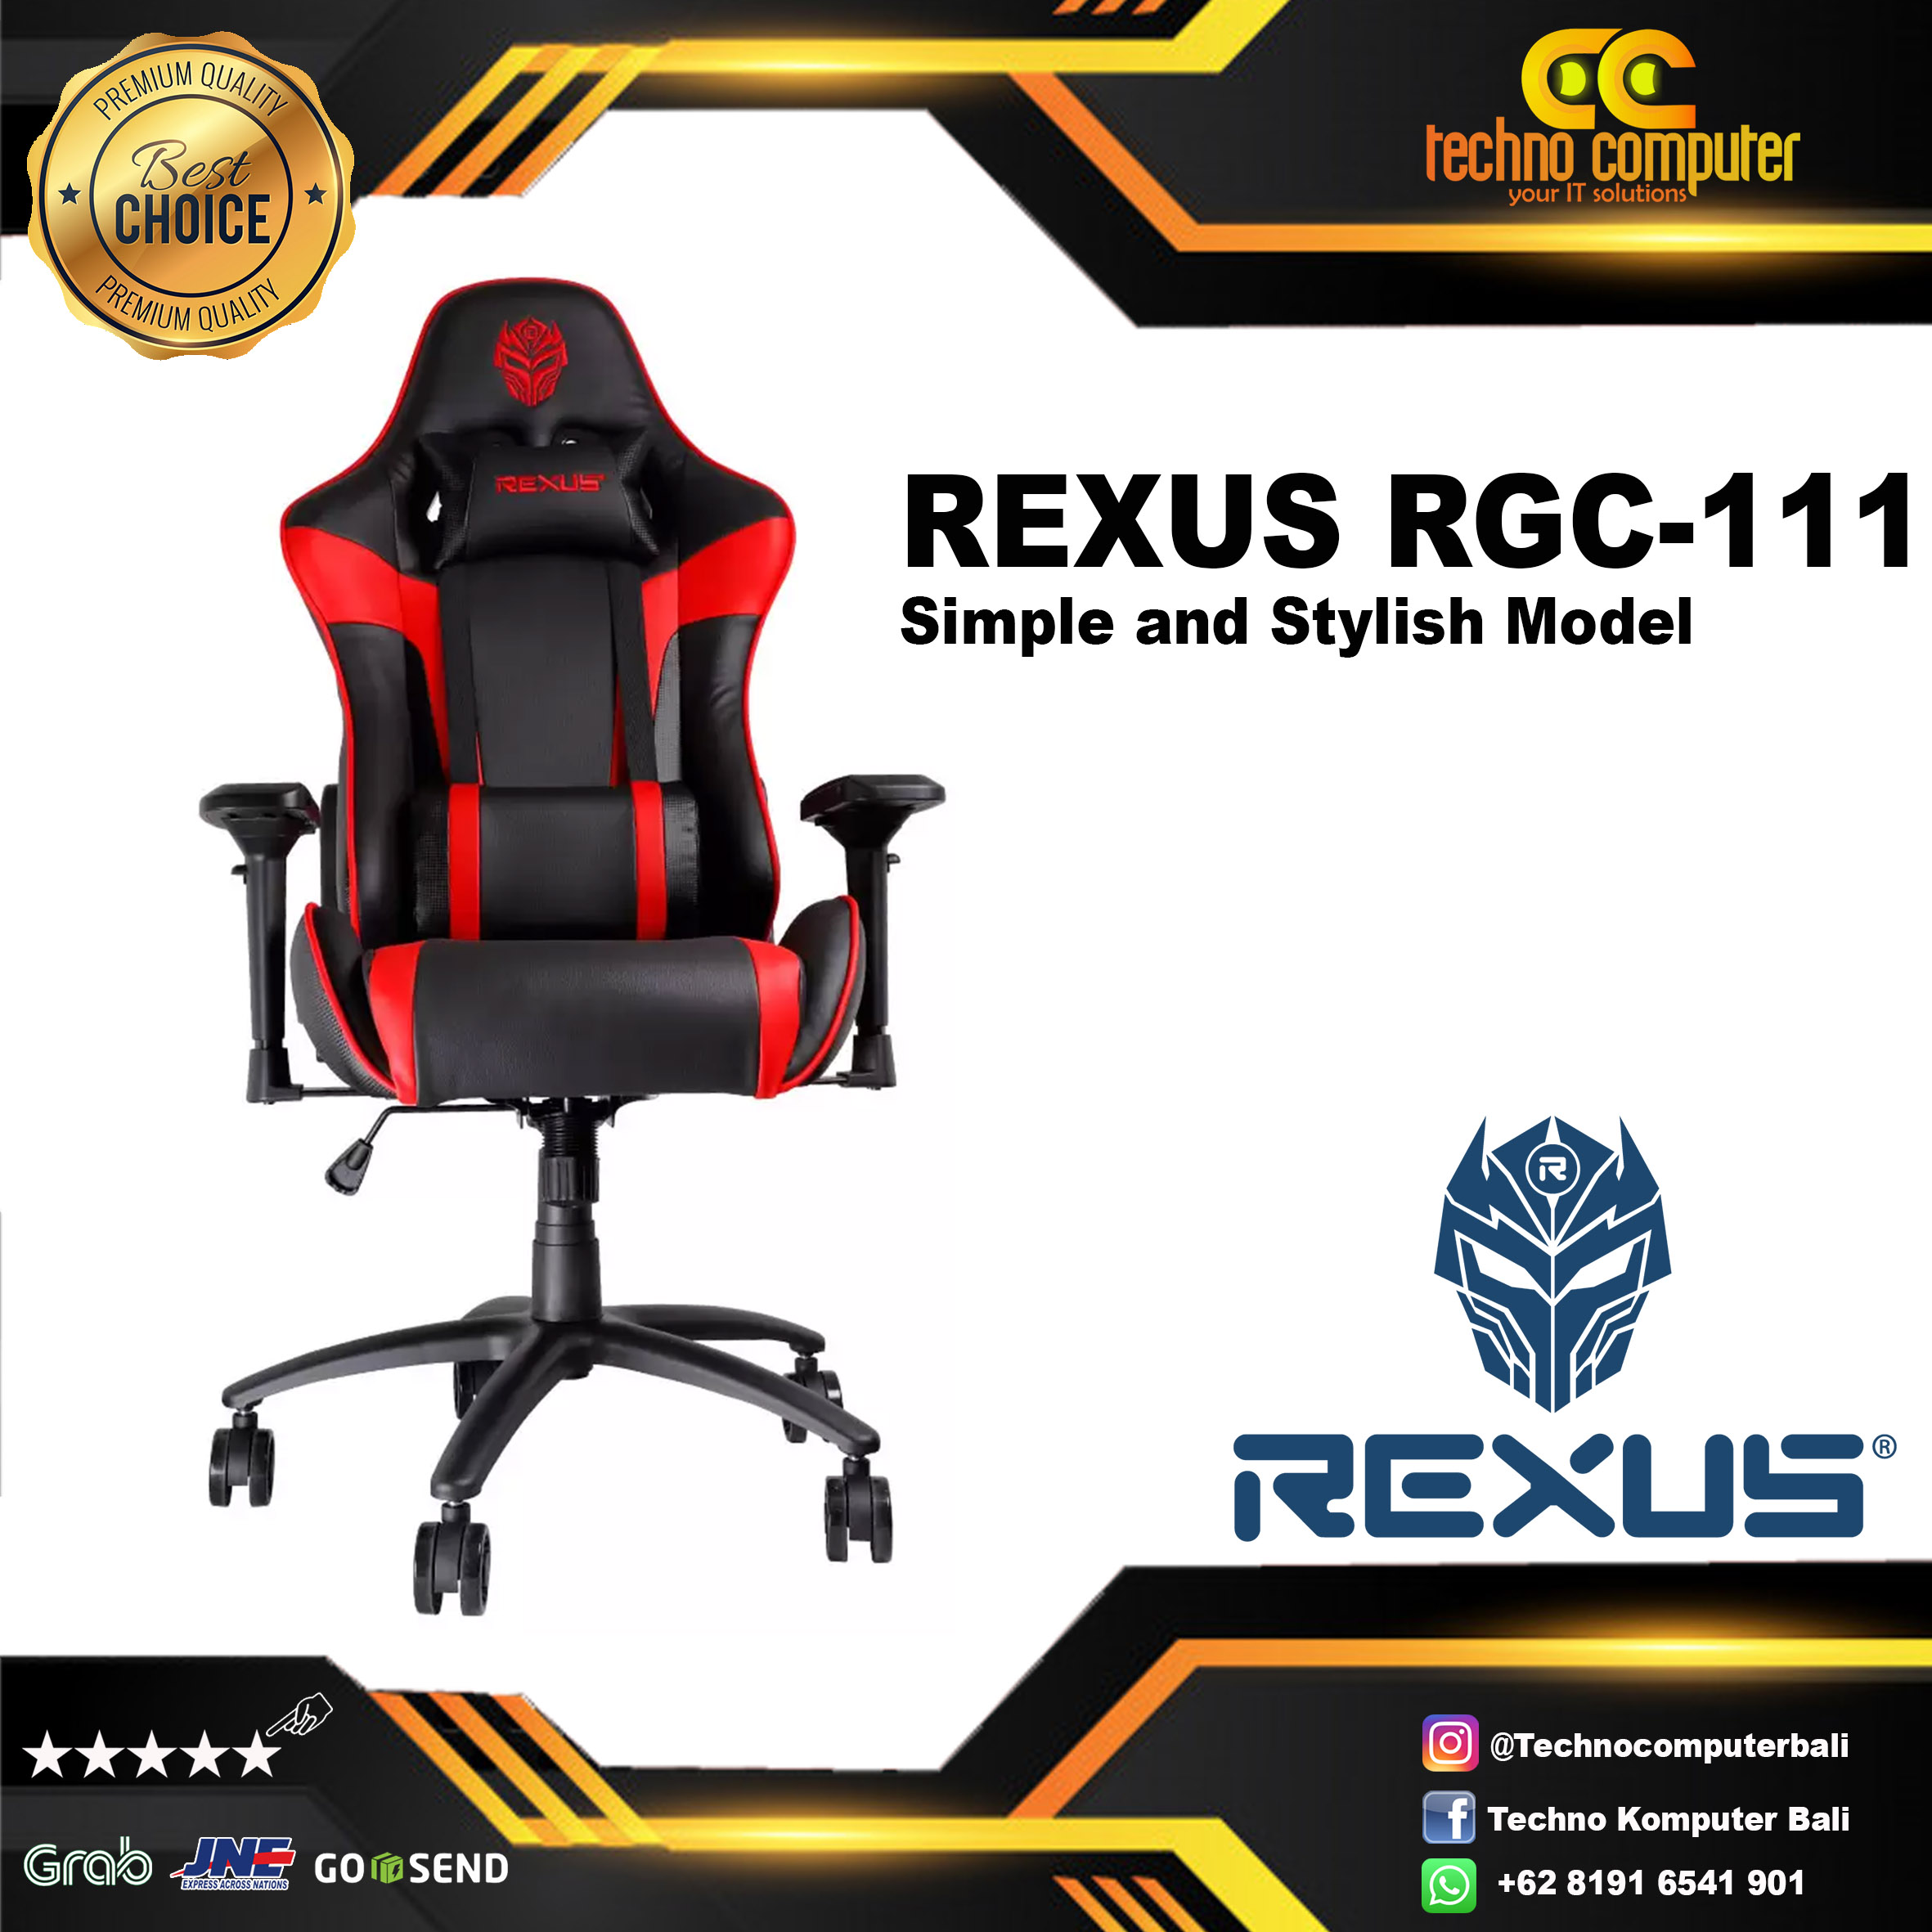 KURSI GAMING REXUS RGC-111 GAMING CHAIR XL Size - BLACK RED